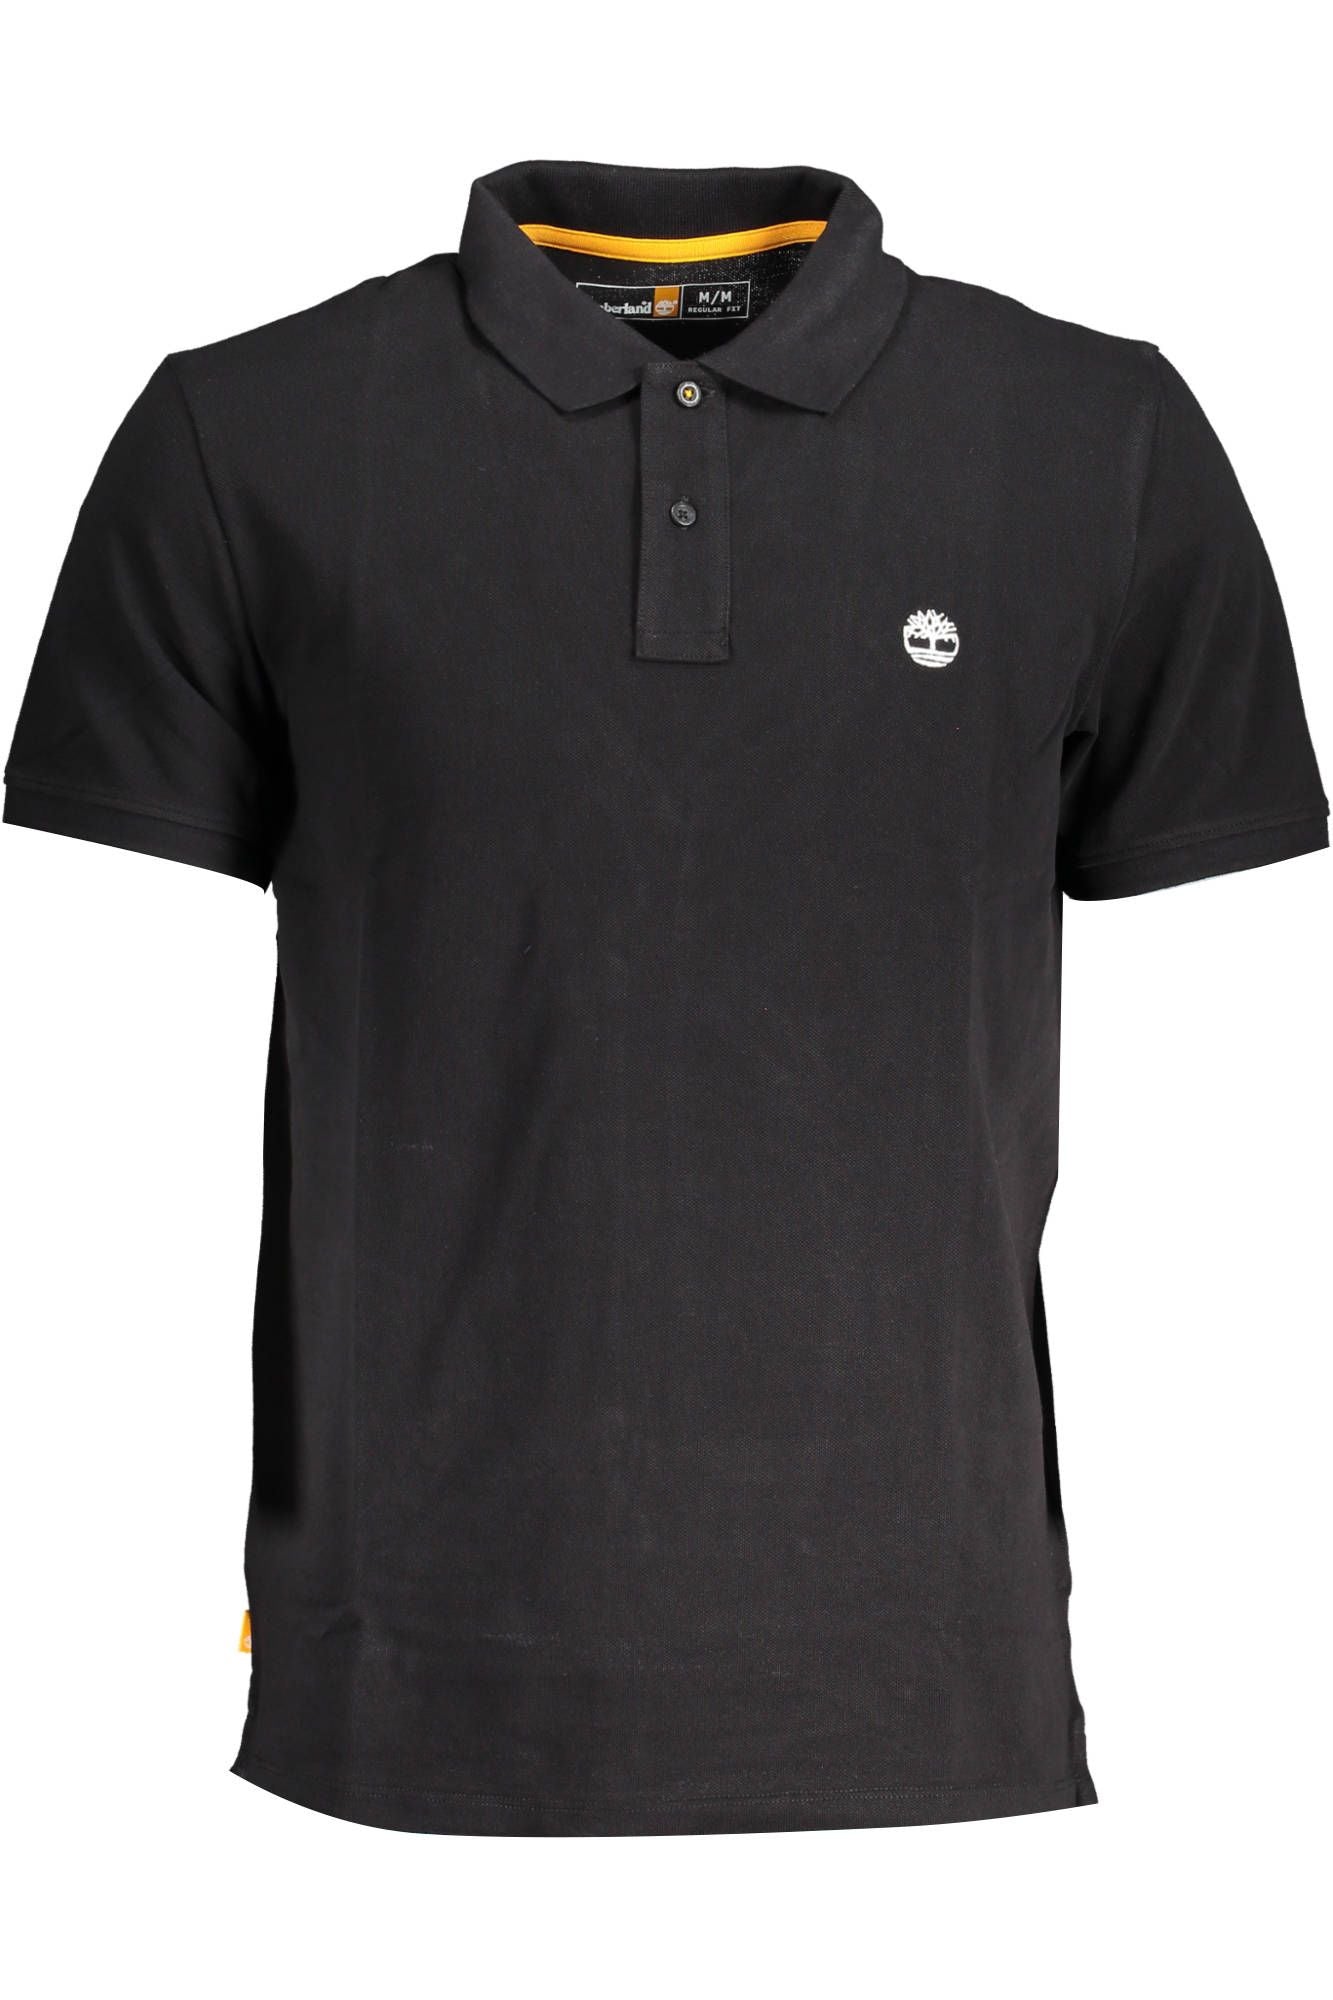 Sleek Black Polo Shirt with Emblem